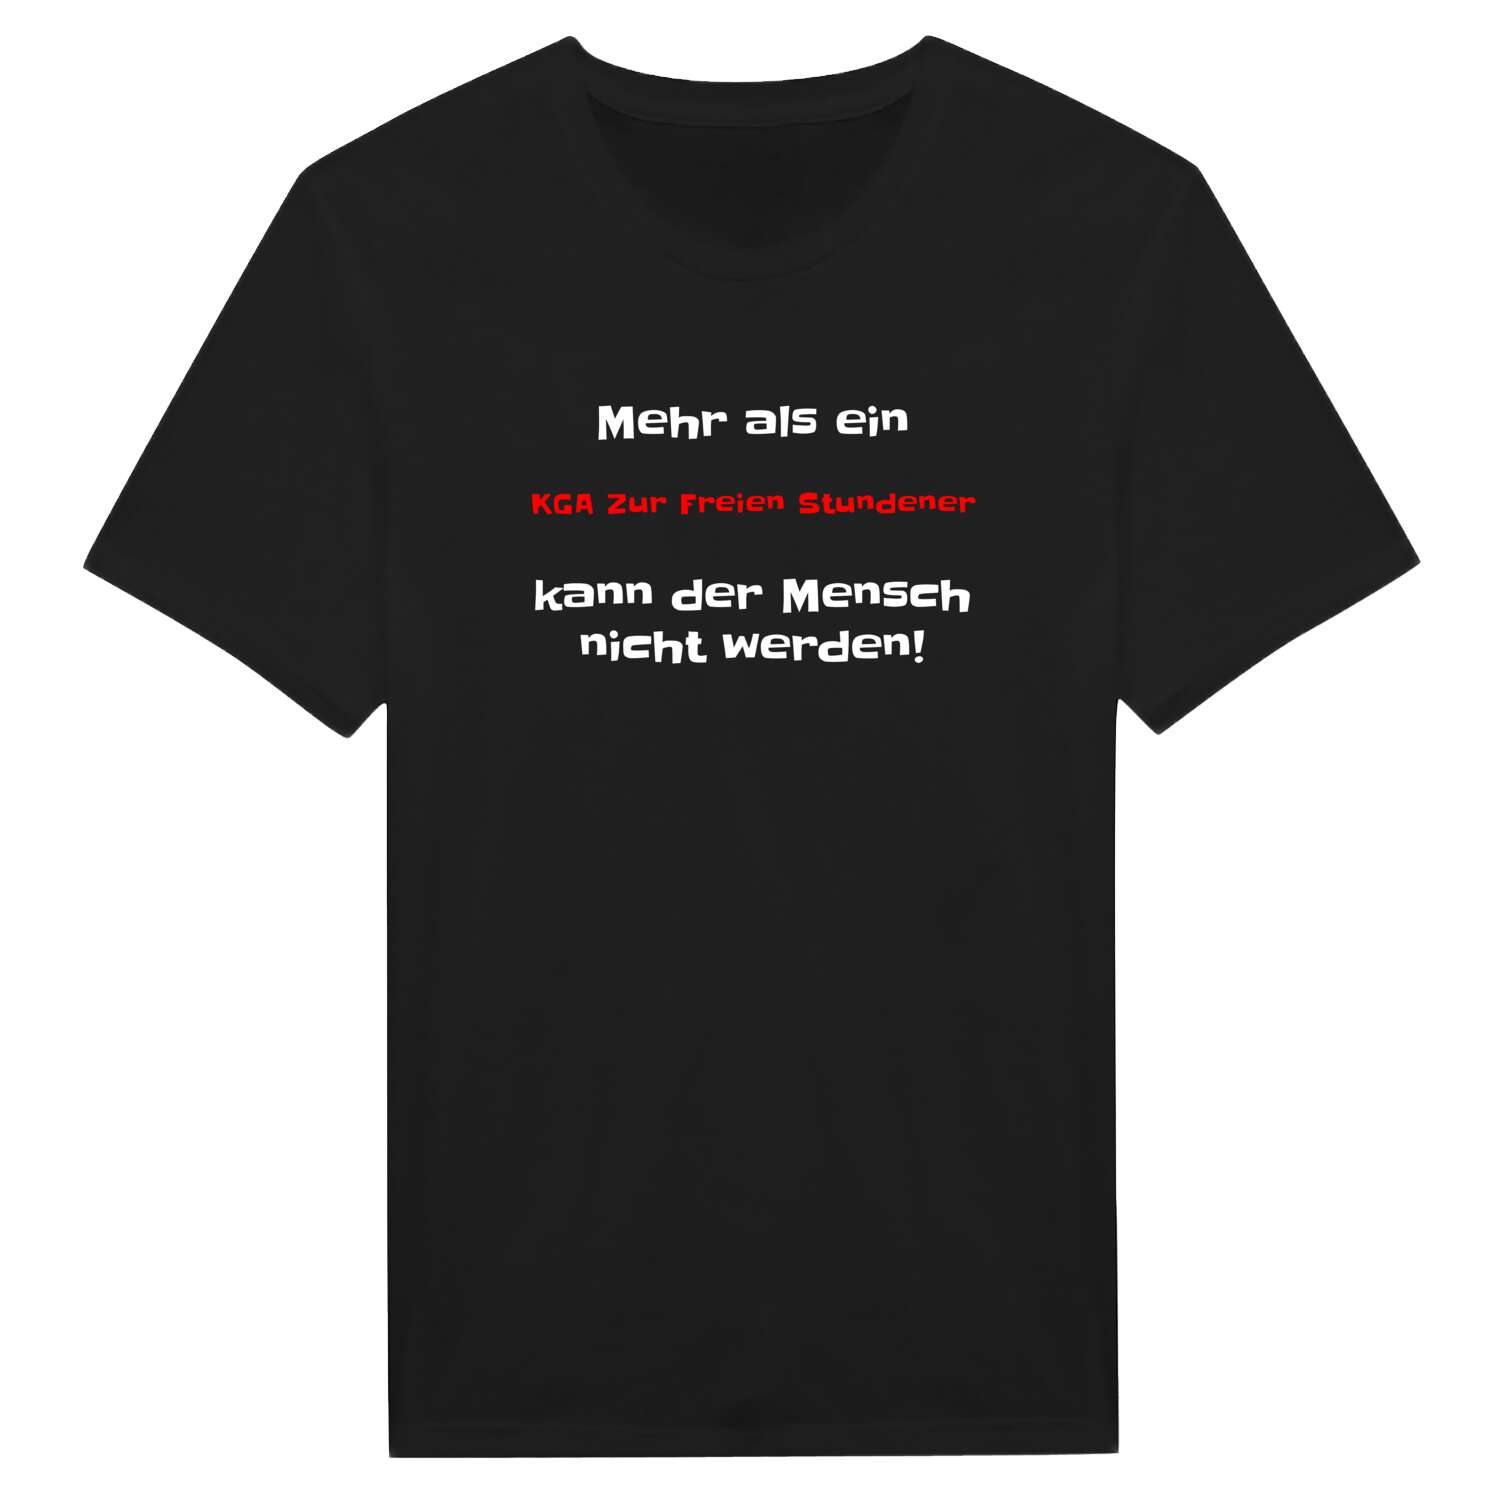 KGA Zur Freien Stunde T-Shirt »Mehr als ein«